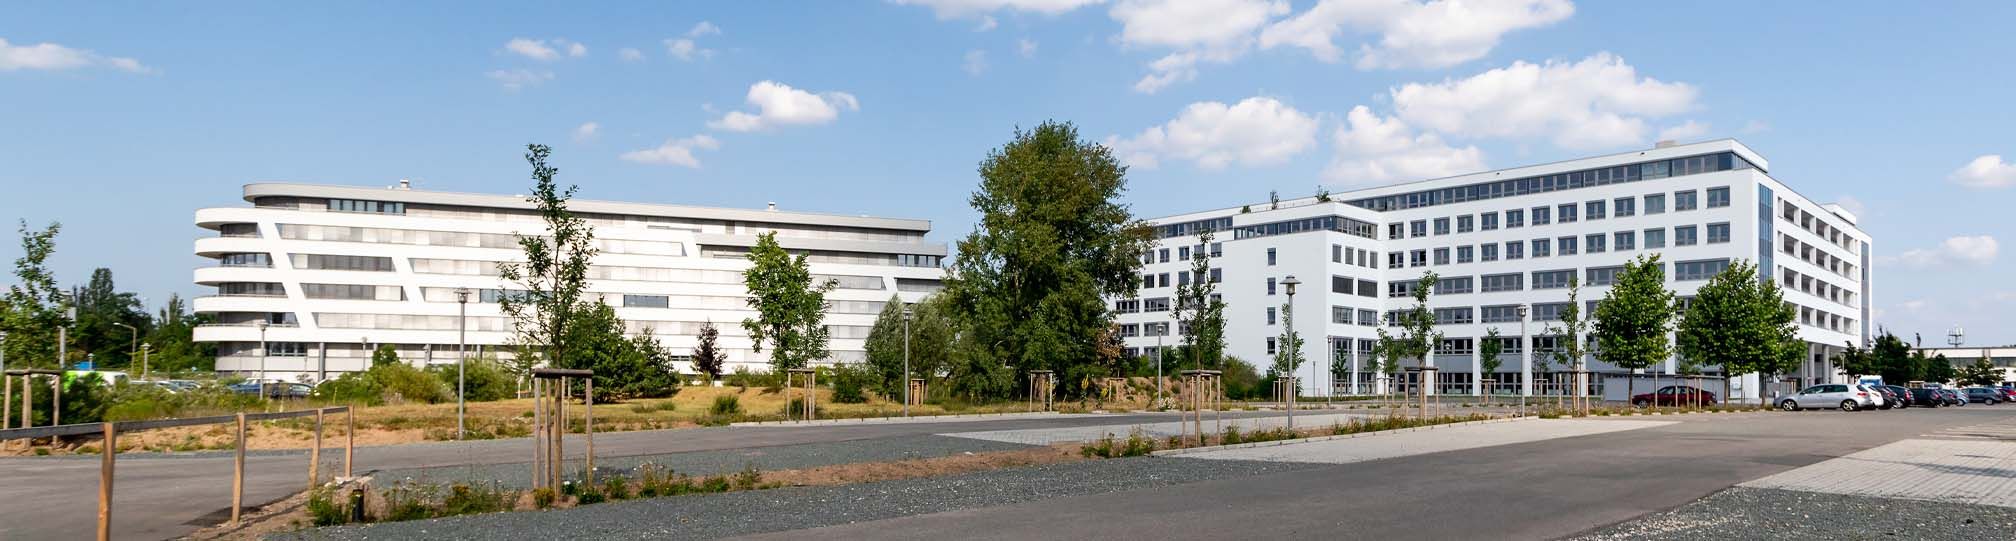 Bürofläche provisionsfrei mieten in Nürnberg /Fürth - Main Donau Park - Parkanlagenen